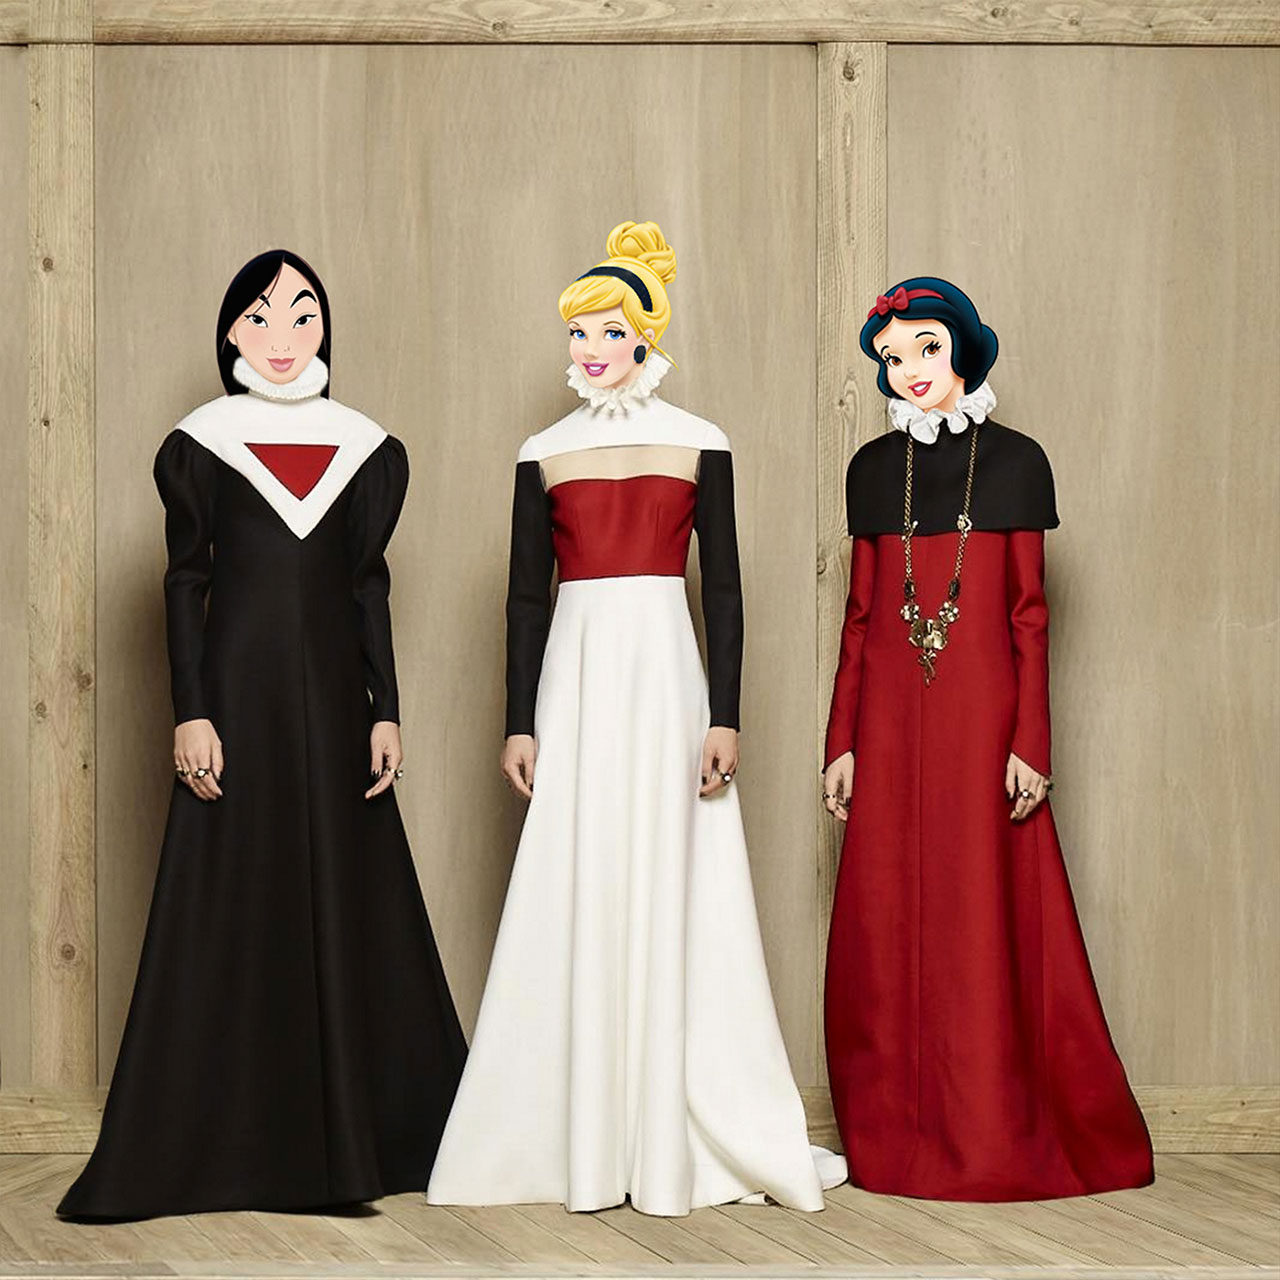 花木兰、灰姑娘和白雪公主从时装秀中直接取代了 Valentino 2016-17 秋冬高级定制时装系列中的模特。 照片由 Gregory Masouras 编辑。